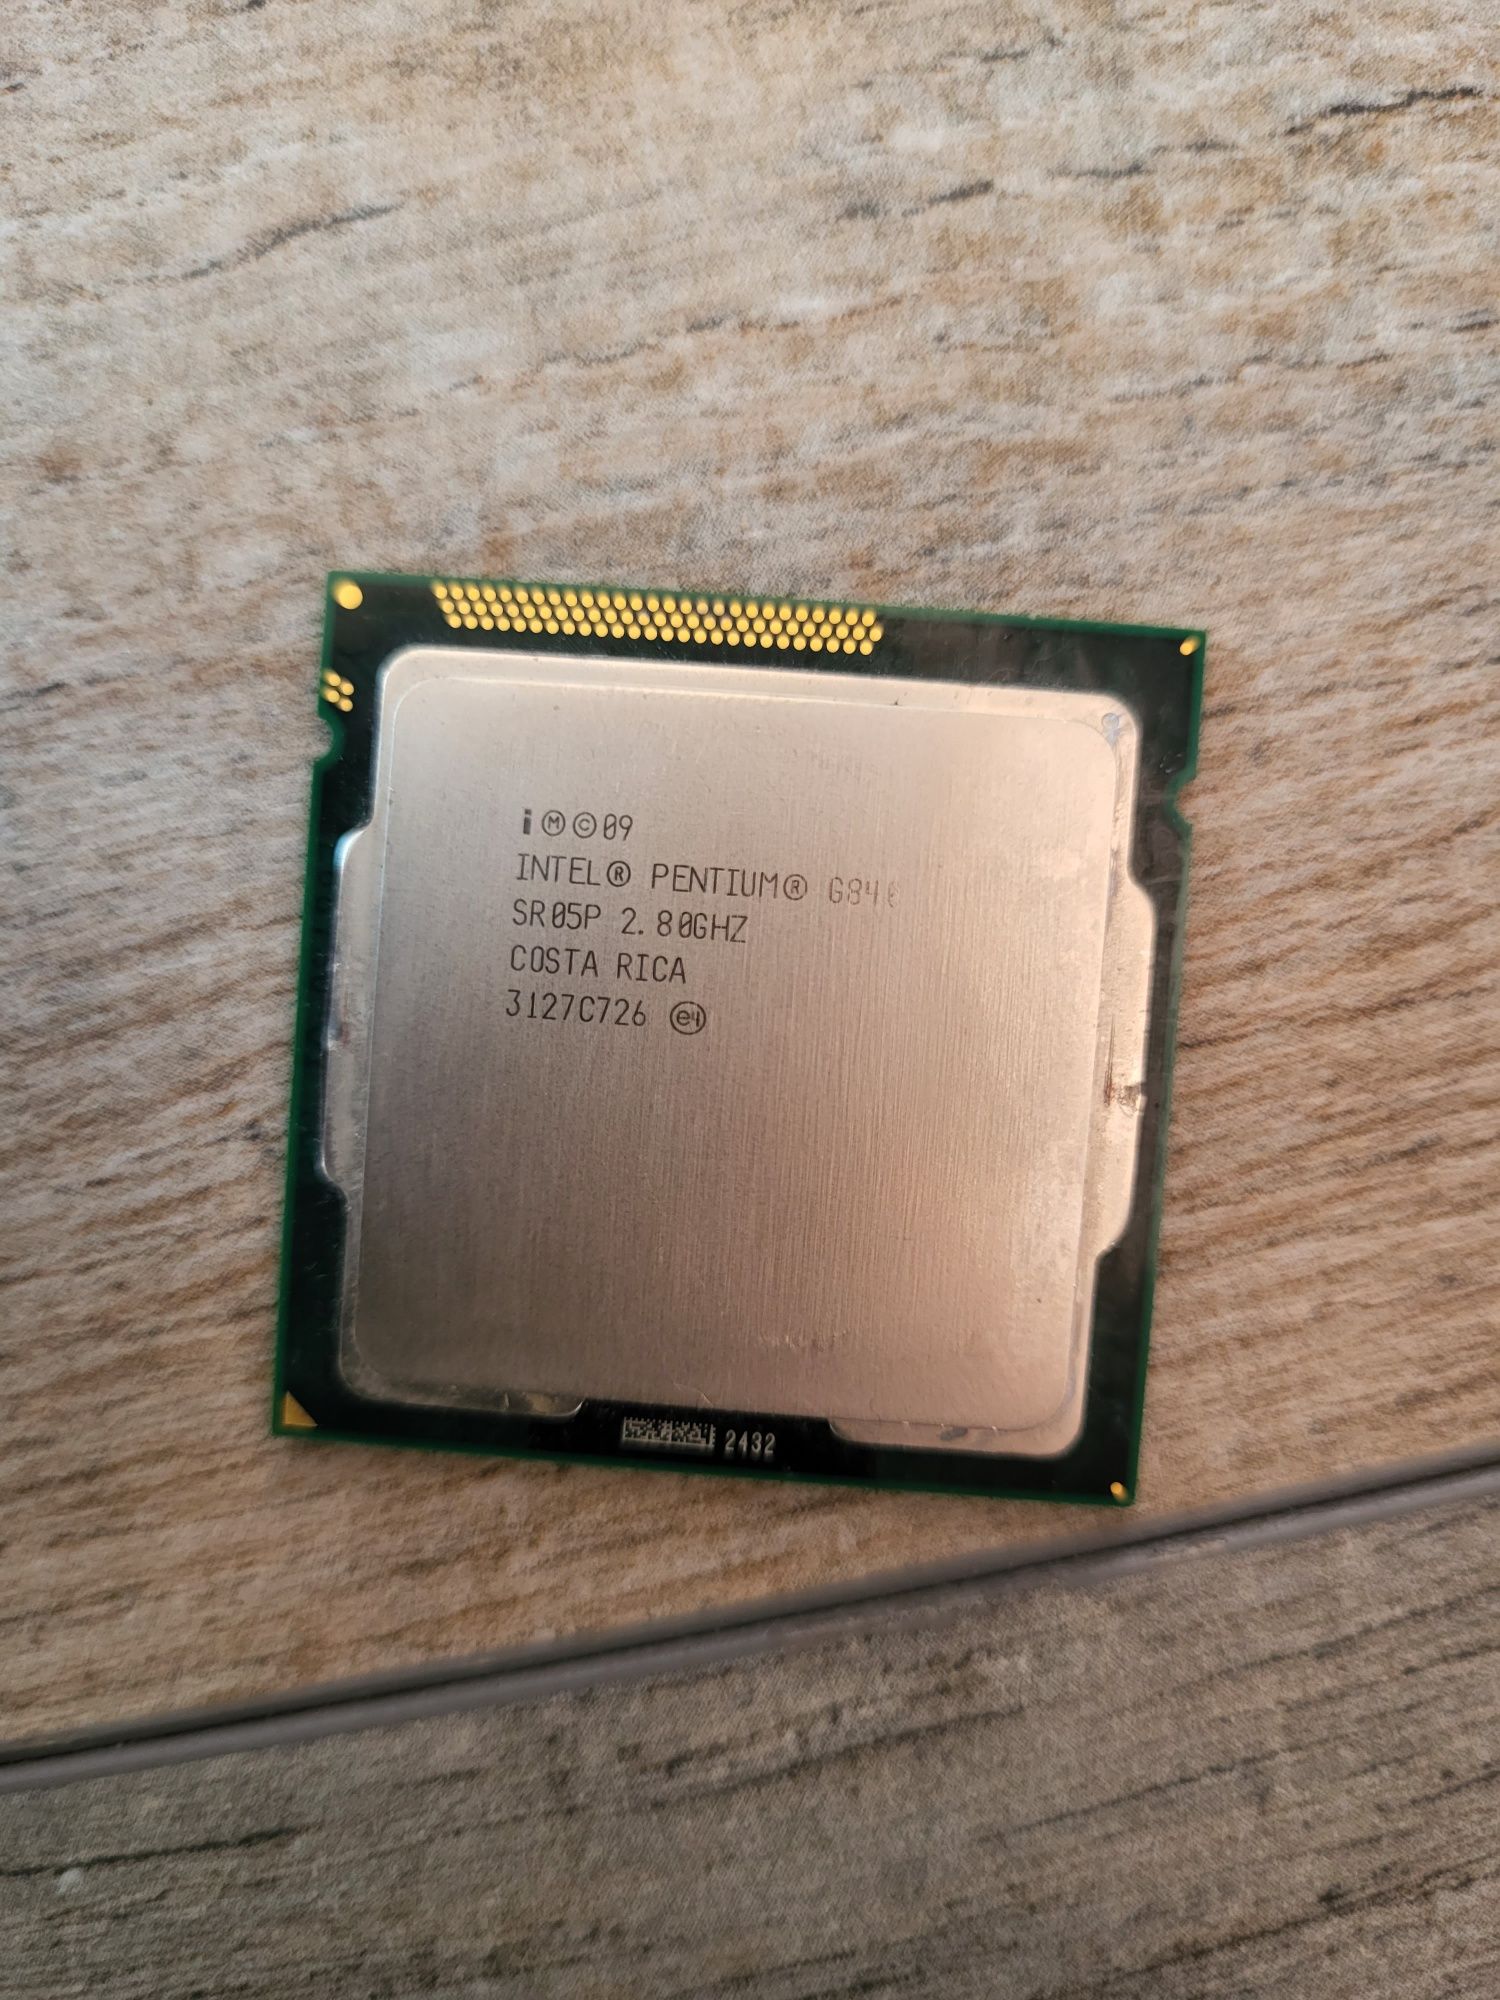 Procesor Intel pentium g840